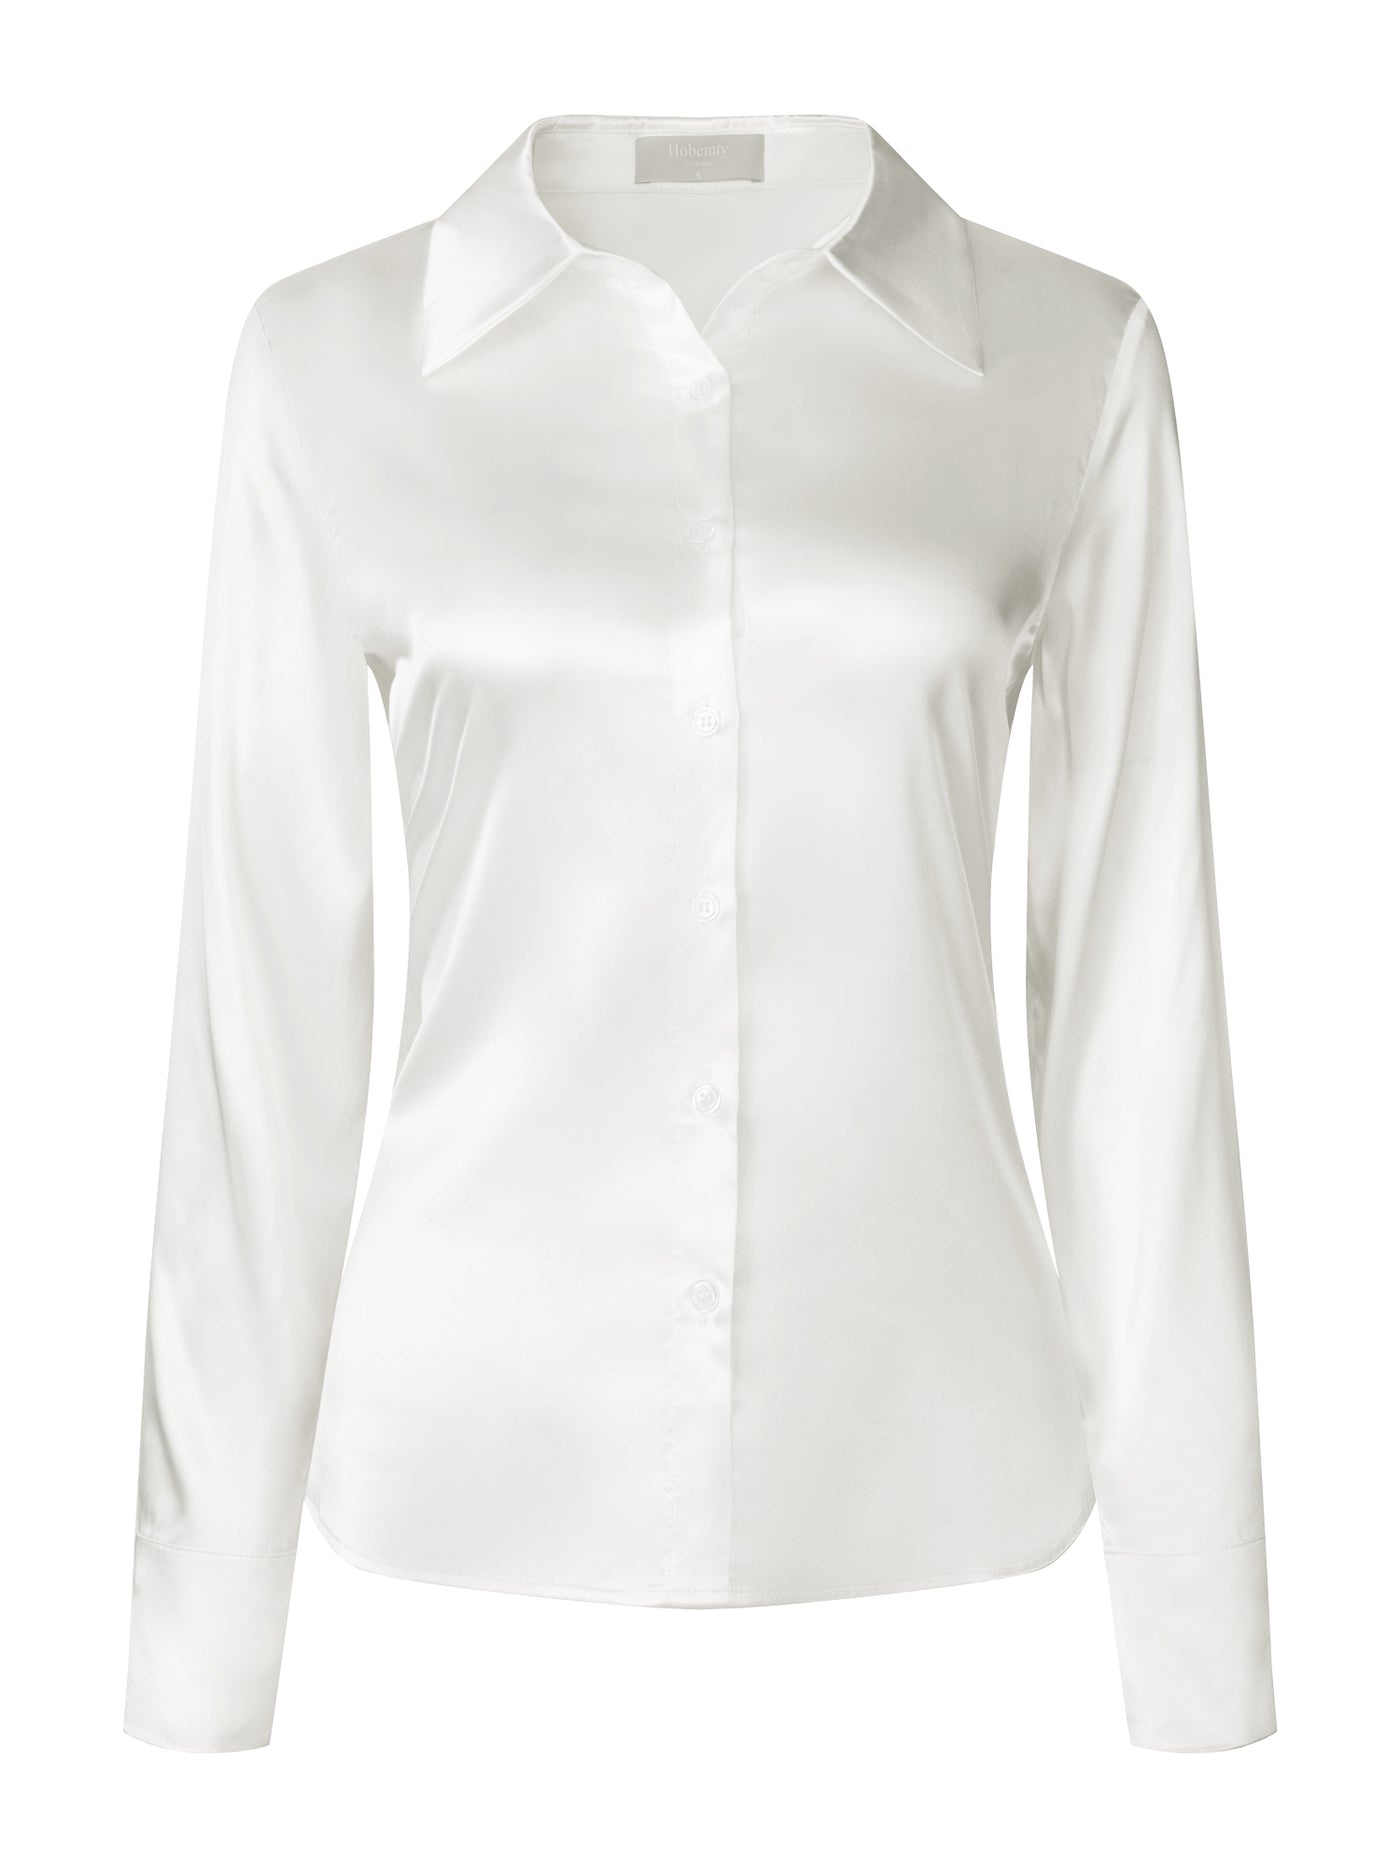 Bublédon Women's Satin Blouse Long Sleeve Work Office Button Down Shirt Top